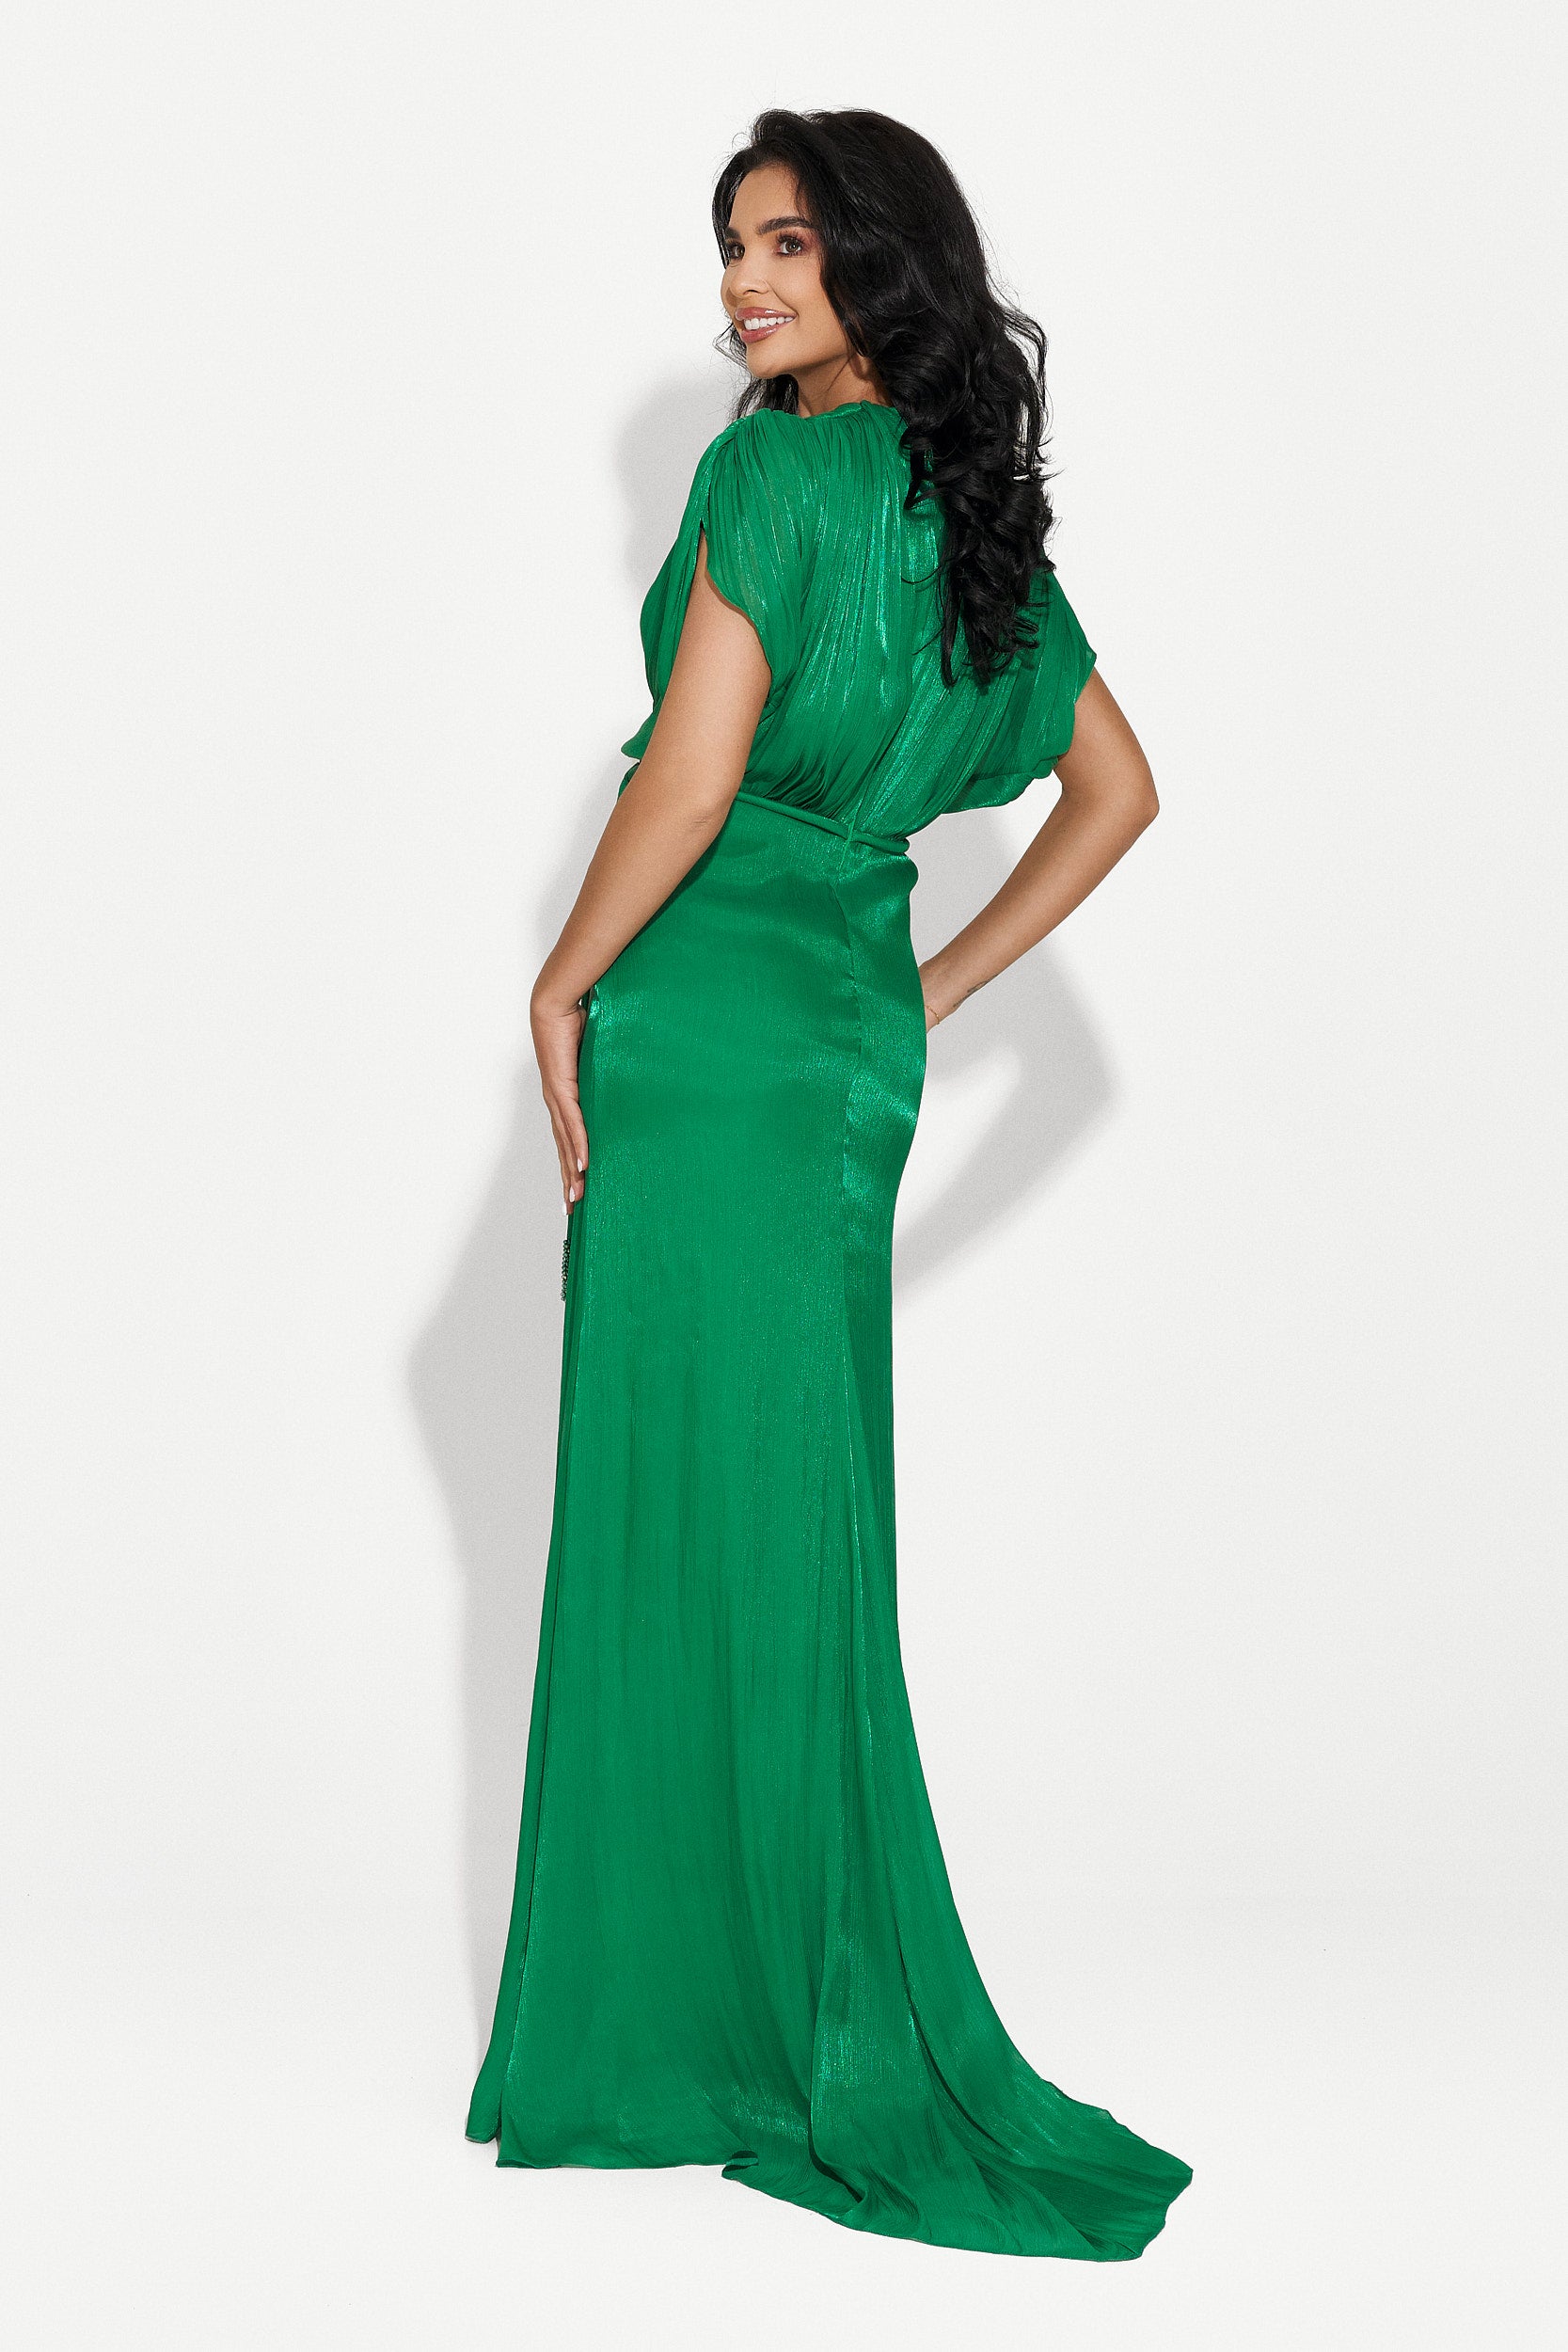 Дамска дълга зелена рокля Safira Bogas